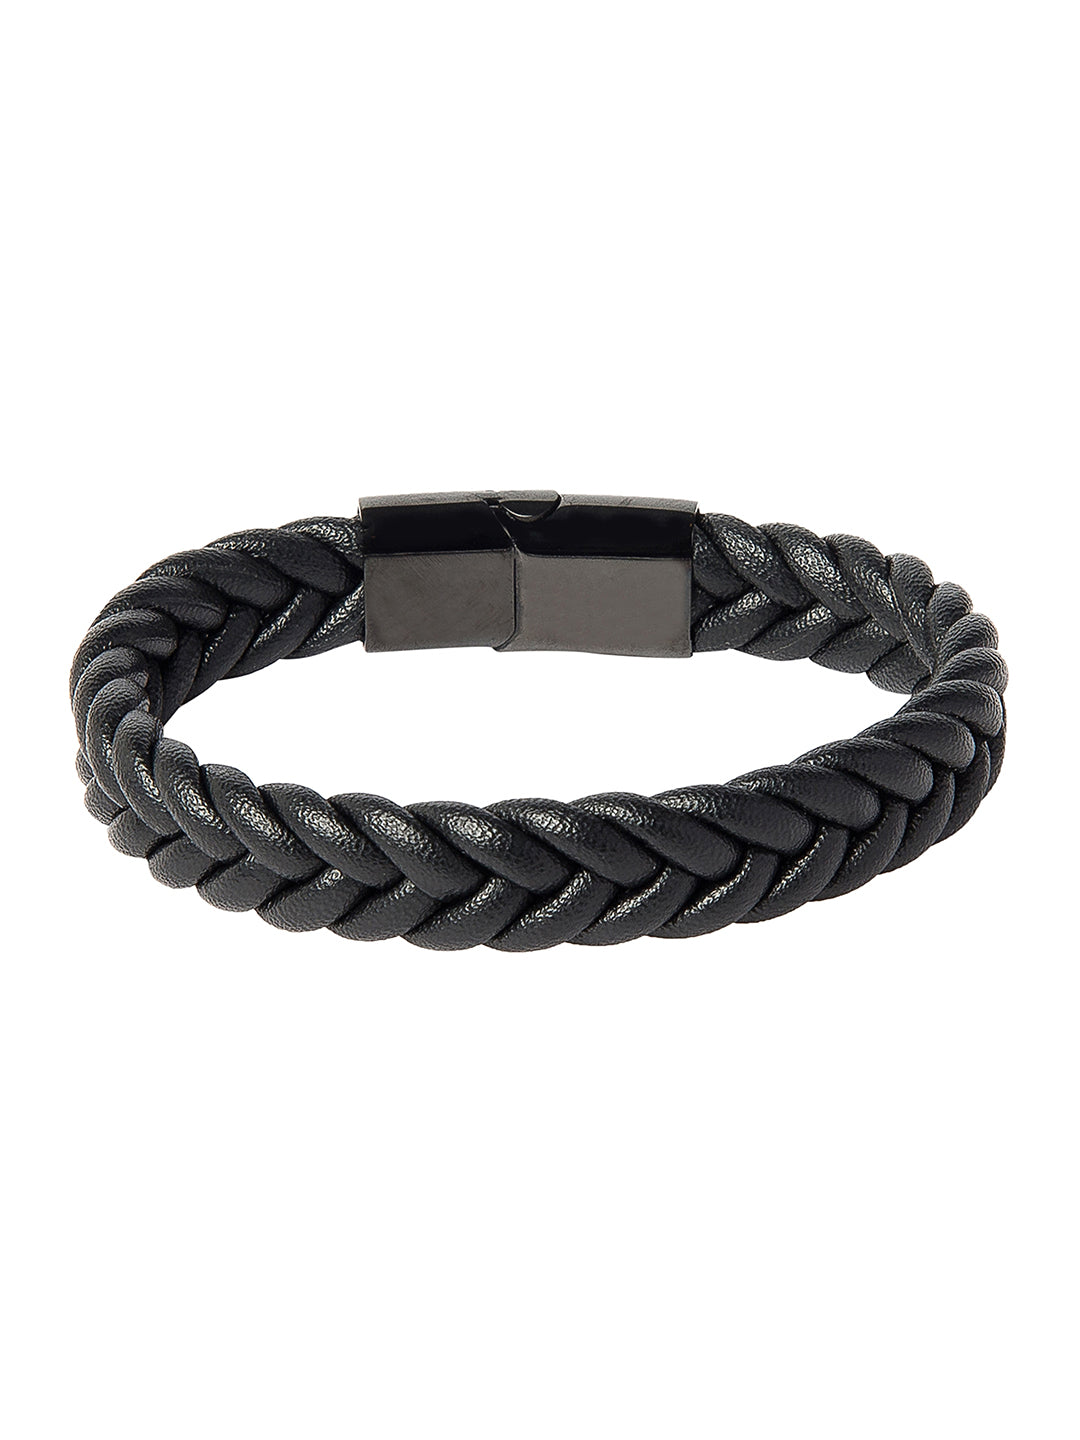 Braided Designer Stainless Steel and Leather Bracelet for Men, Boys Black (SJ_3353) | Shining Jewel